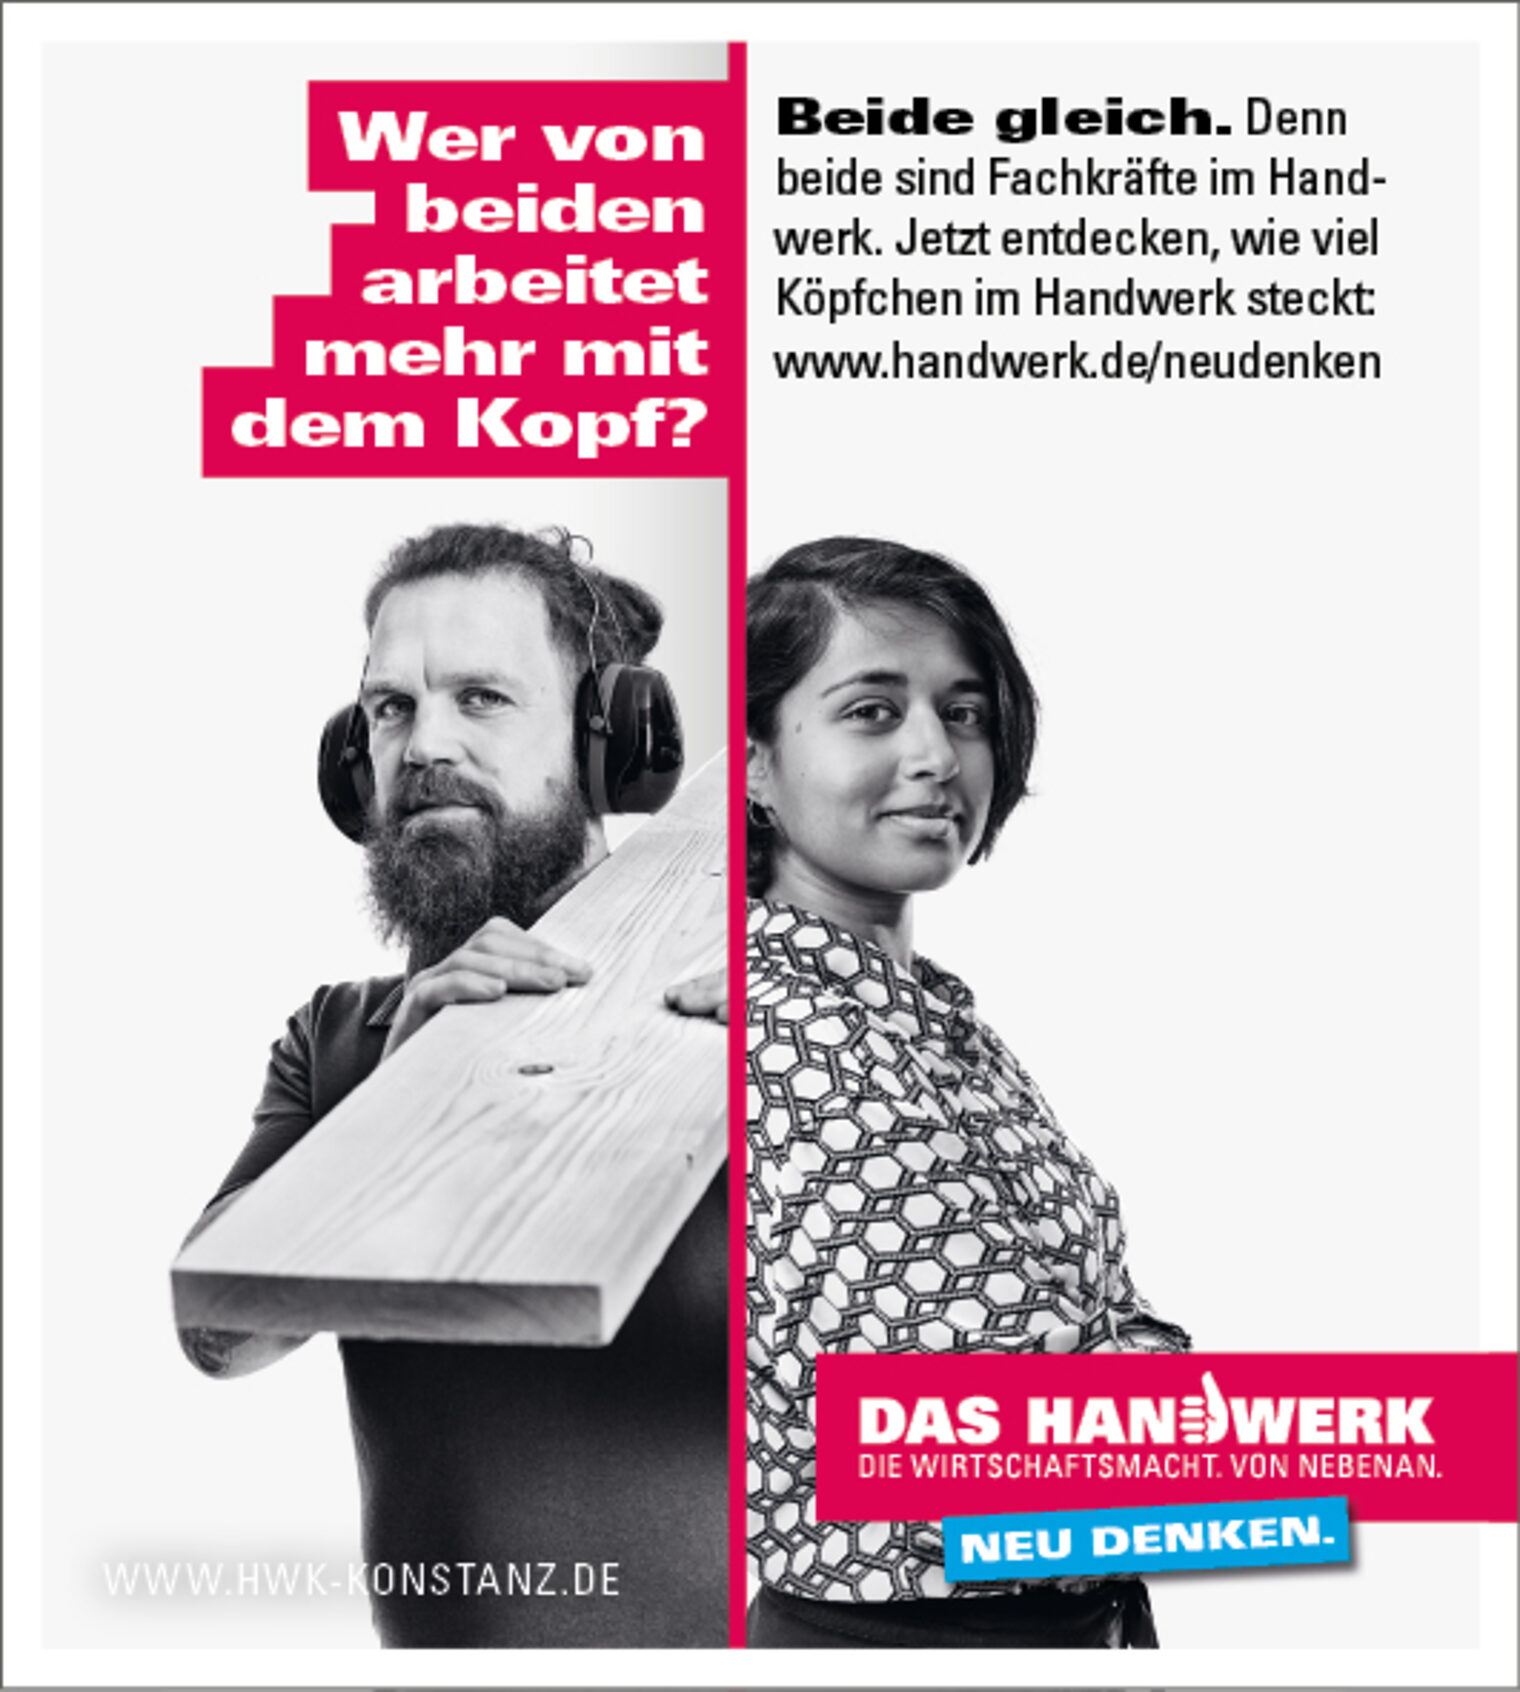 Anzeigenmotiv der Imagekampagne des deutschen Handwerks: Mann und Frau mit Spruch "Wer von beiden arbeitet mehr mit dem Kopf?"